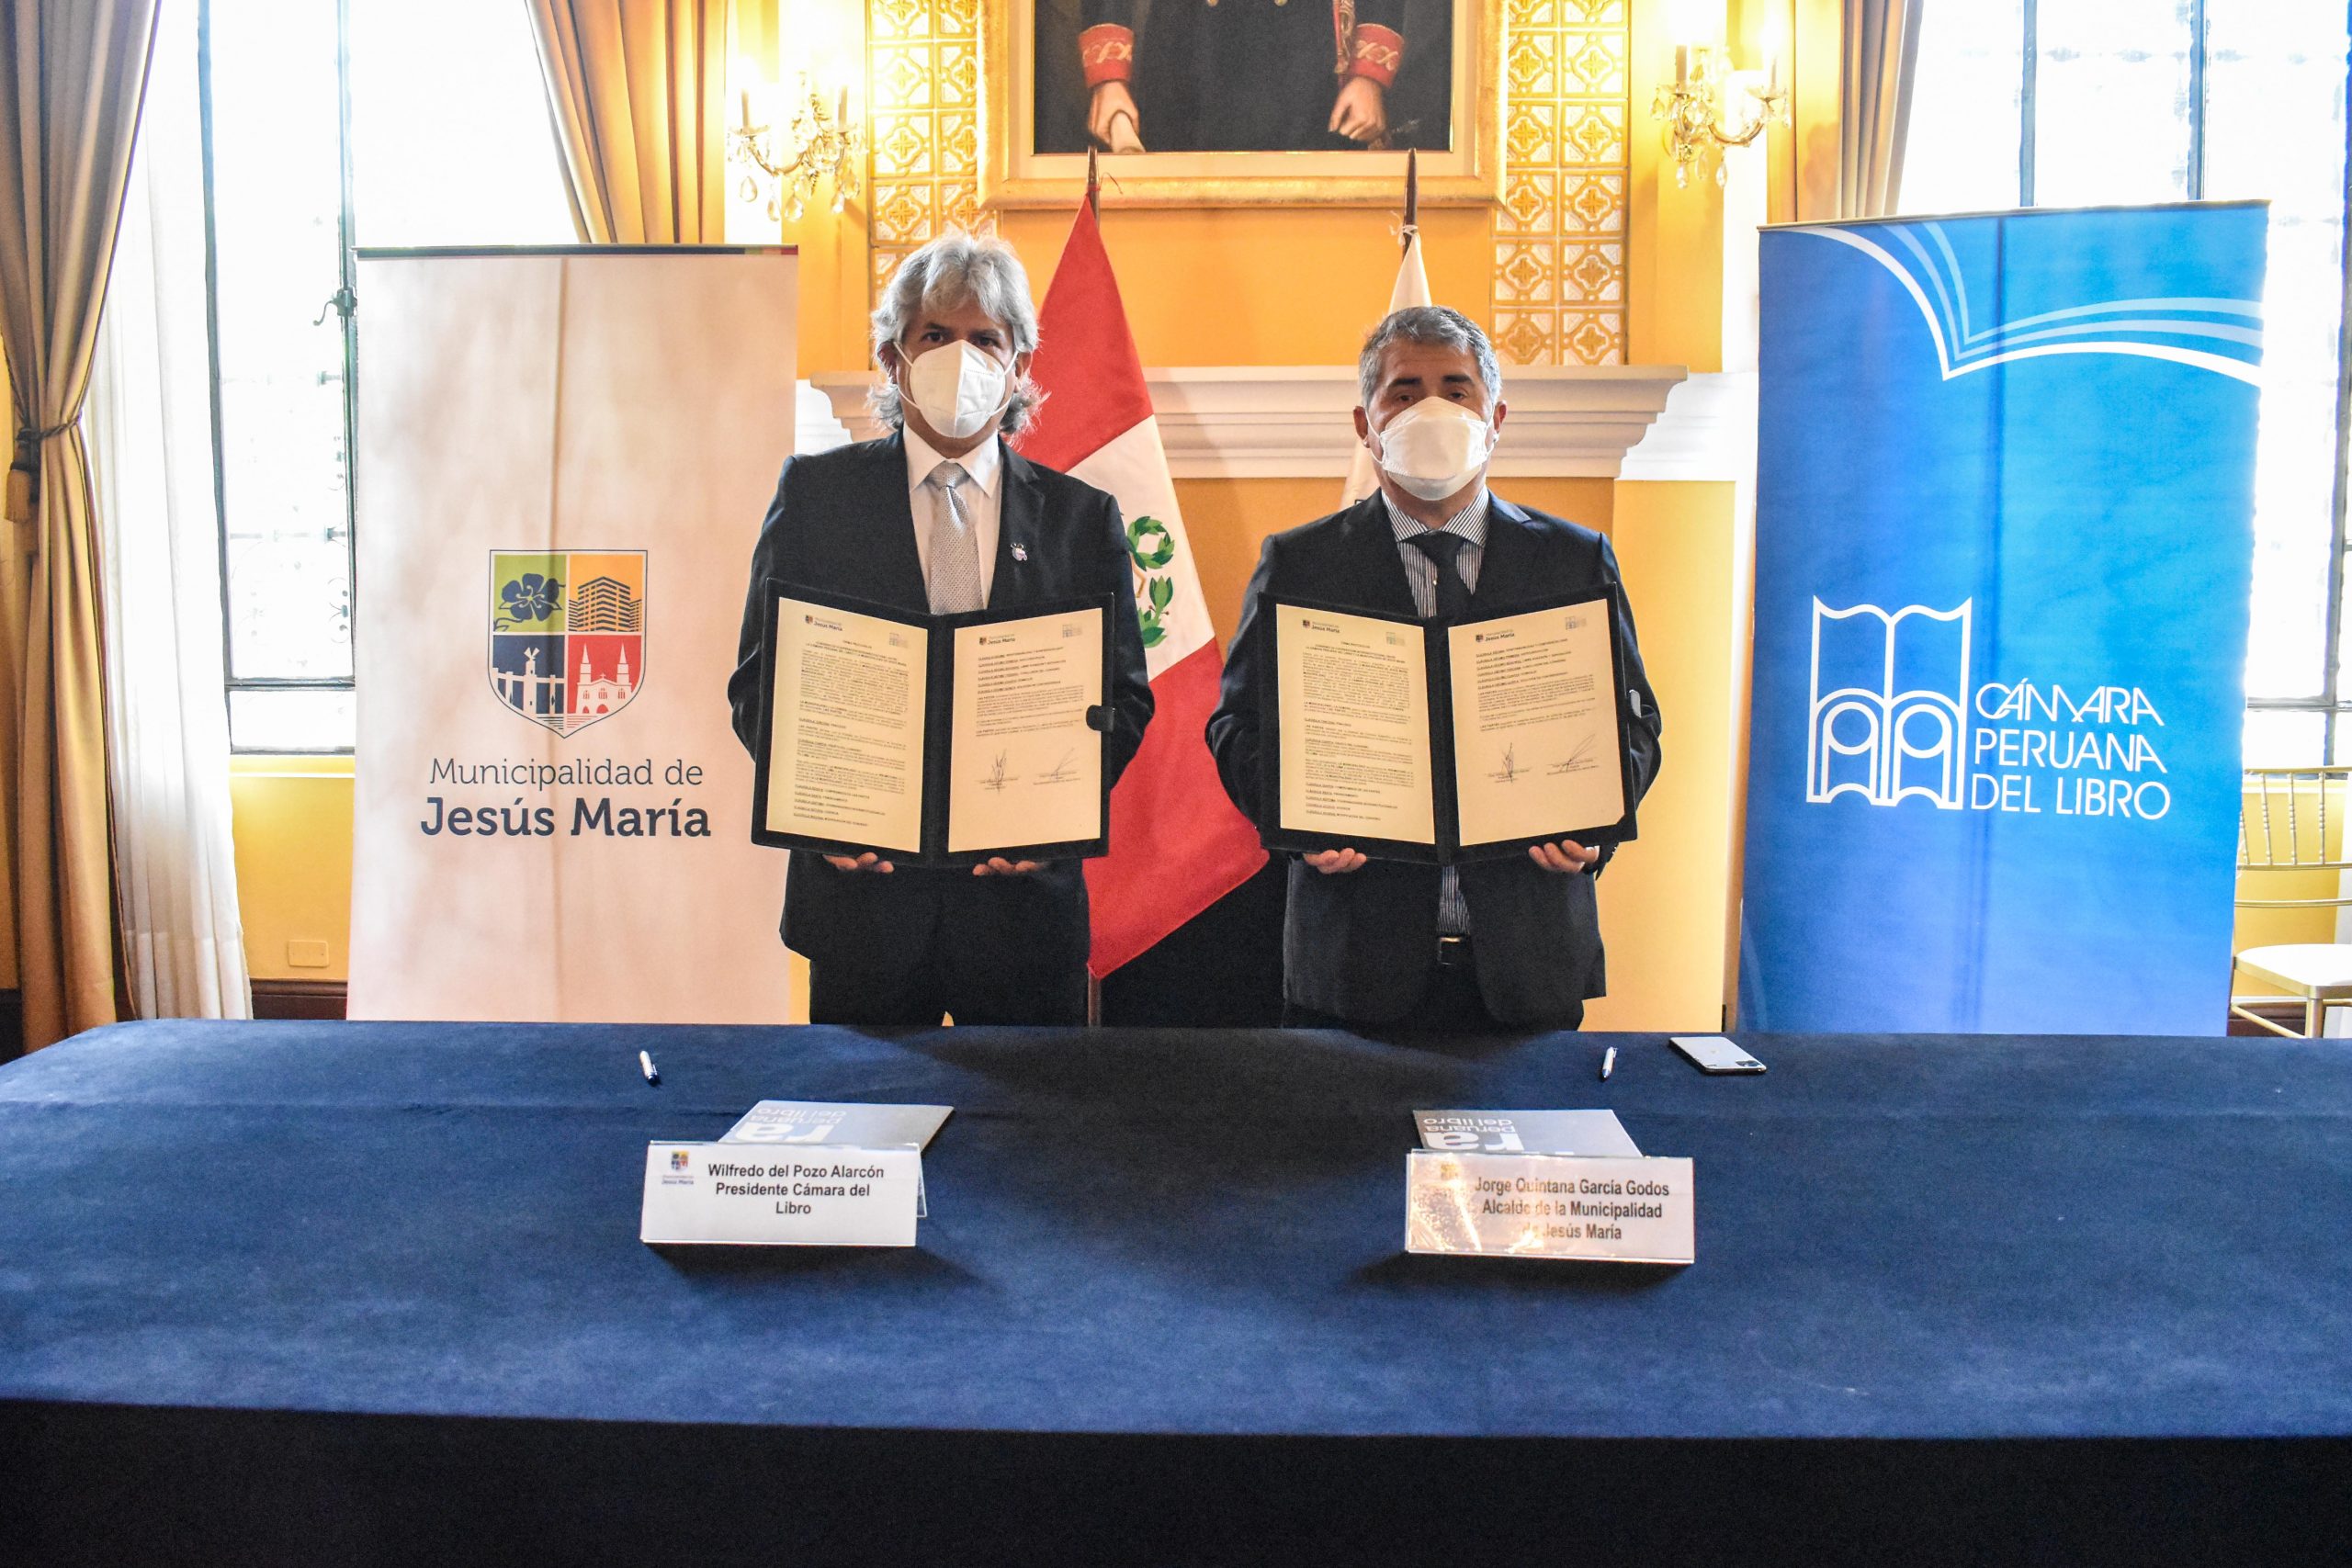 Foto donde se muestra al alcalde de Jesús María, Jorge Quintana, y al presidente de la Cámara Peruana del Libro, Willy Del Pozo, mostrando convenio firmado.